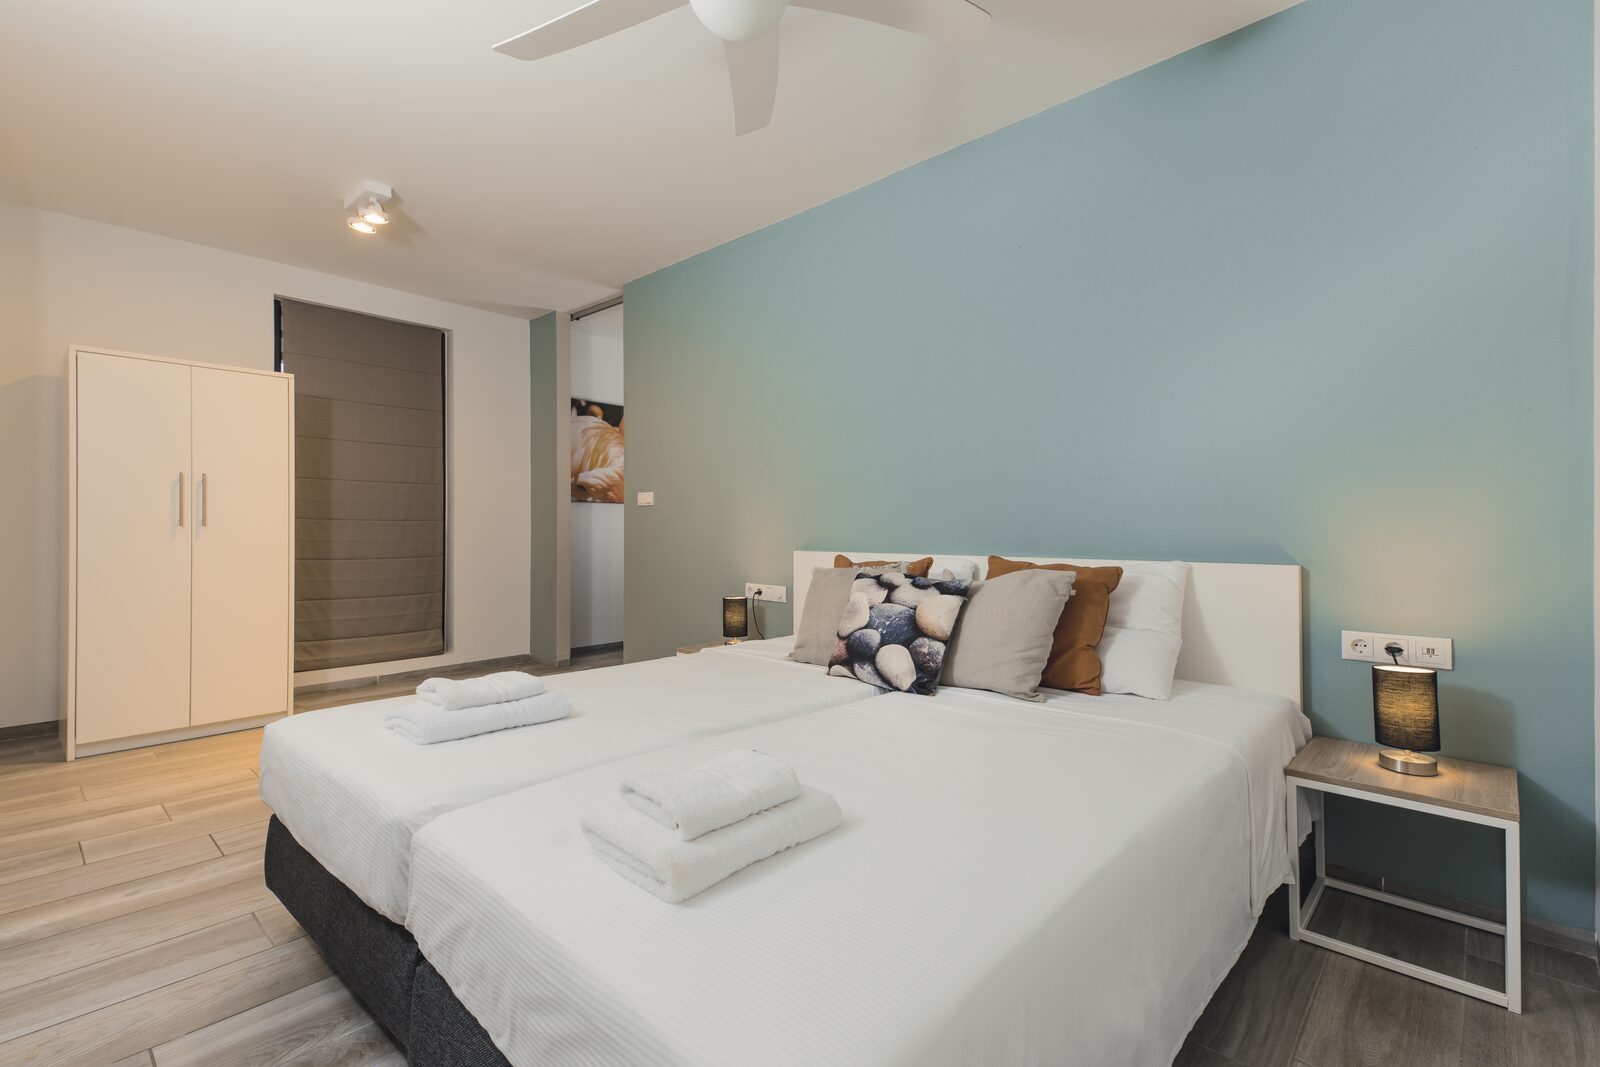 Voudriez-vous passer des vacances à Bonaire ? Le Resort Bonaire propose des appartements très spacieux dans un bel hôtel. 